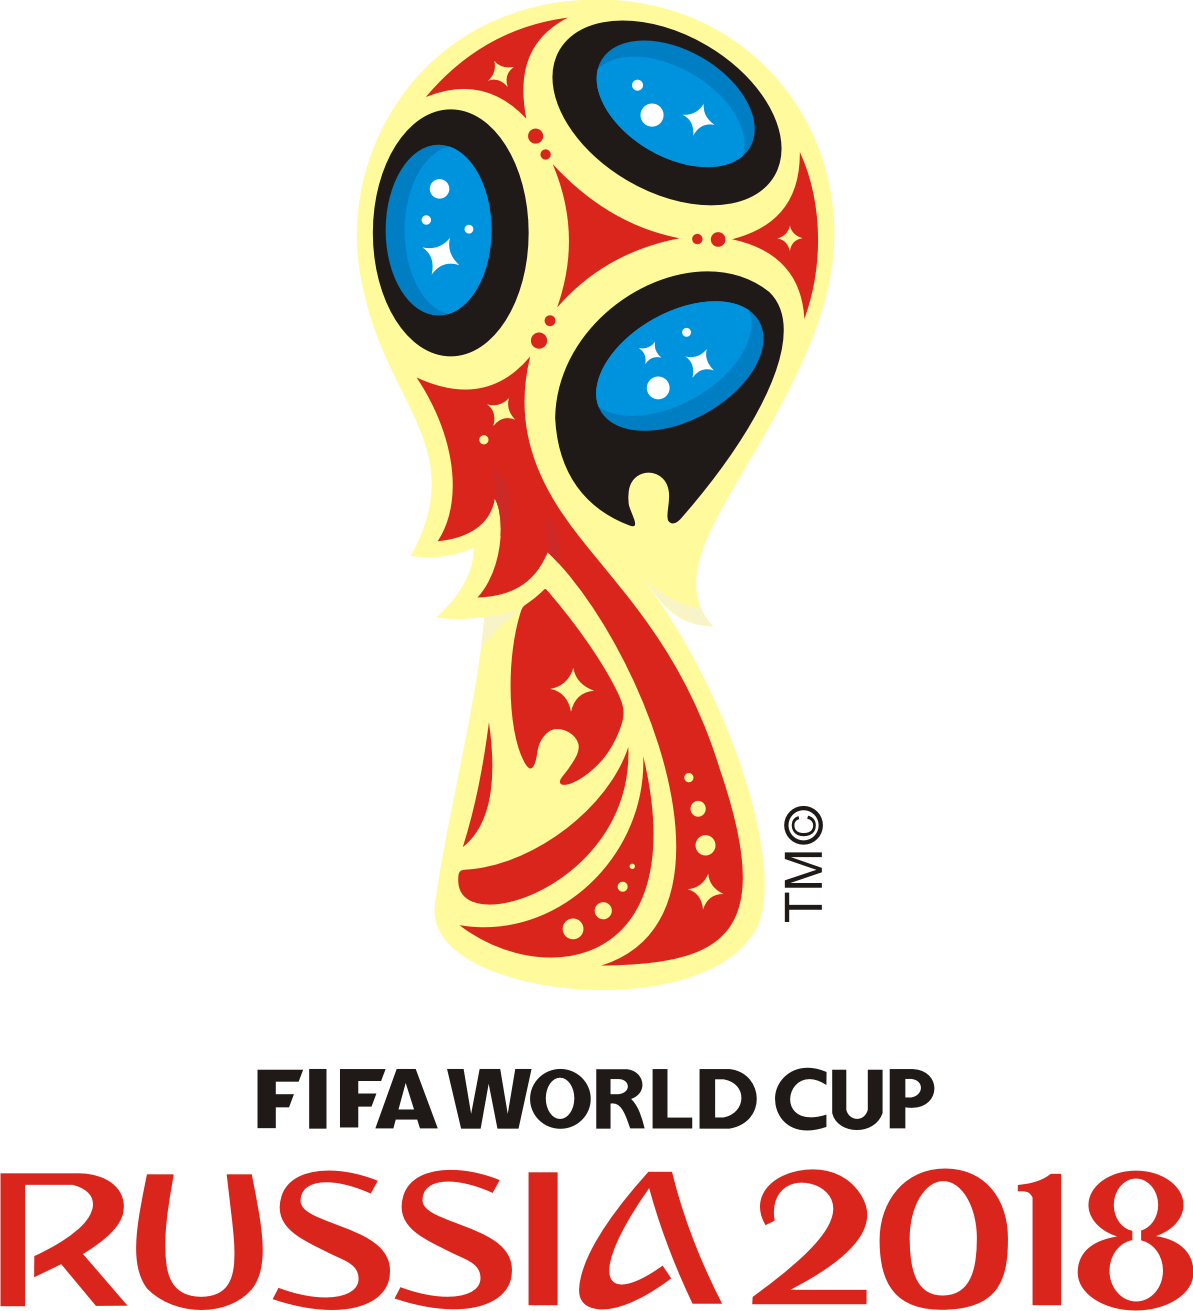 Logo Resmi Piala Dunia FIFA 2018 Rusia Free Vector CDR Logo